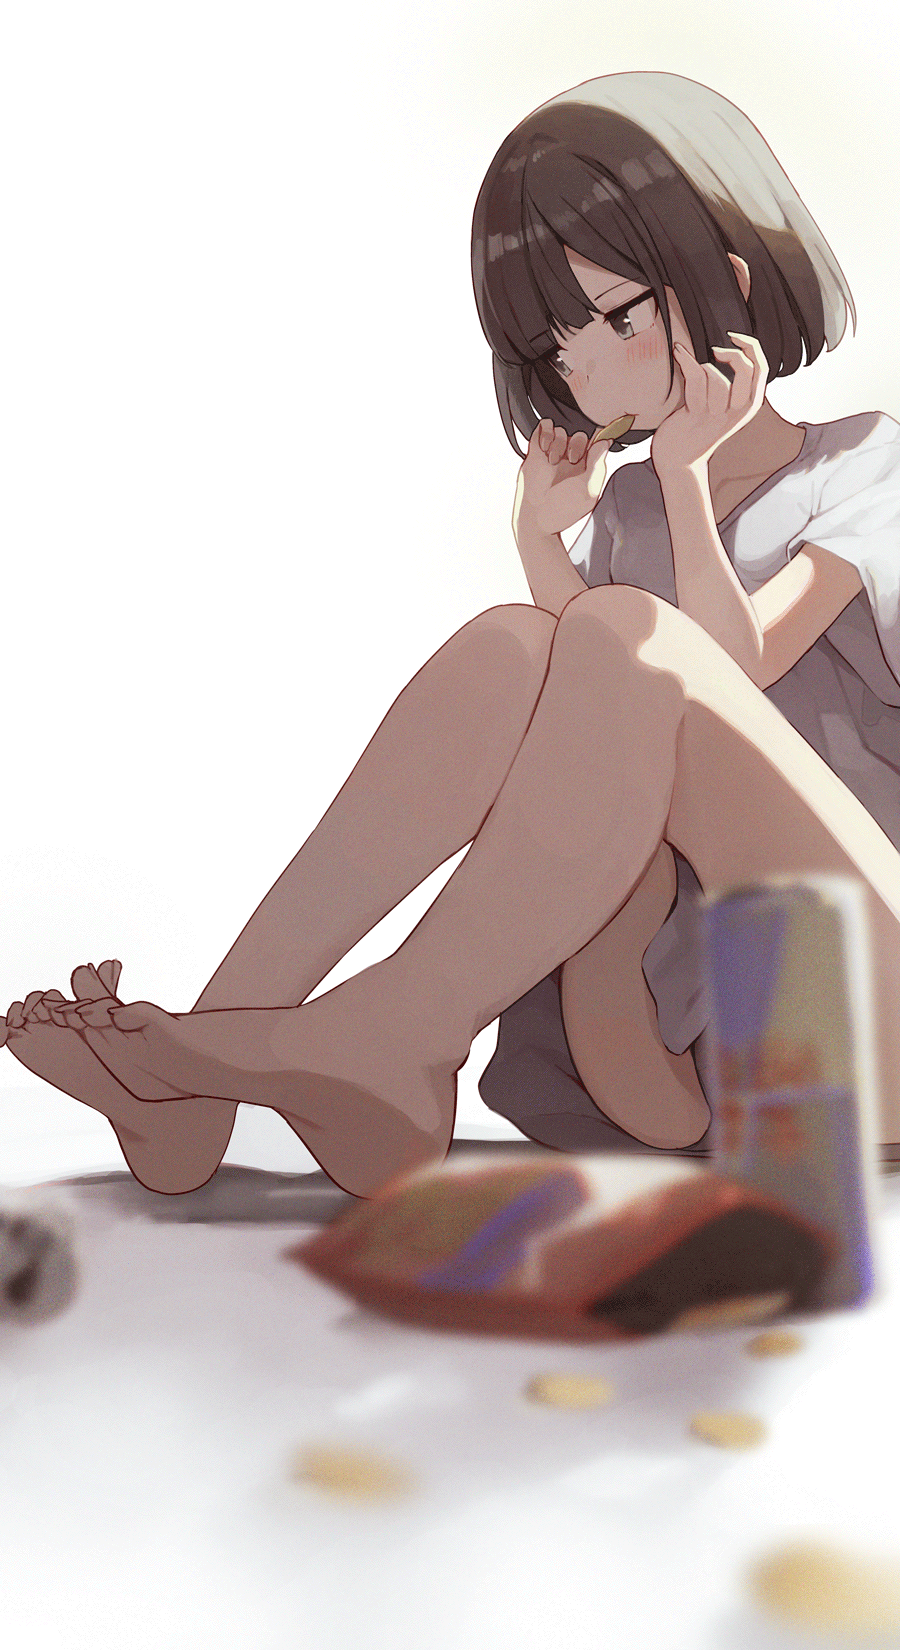 Anime Anime Girls Short Hair Feet Black Hair Vertical Eating Chips 900x1650